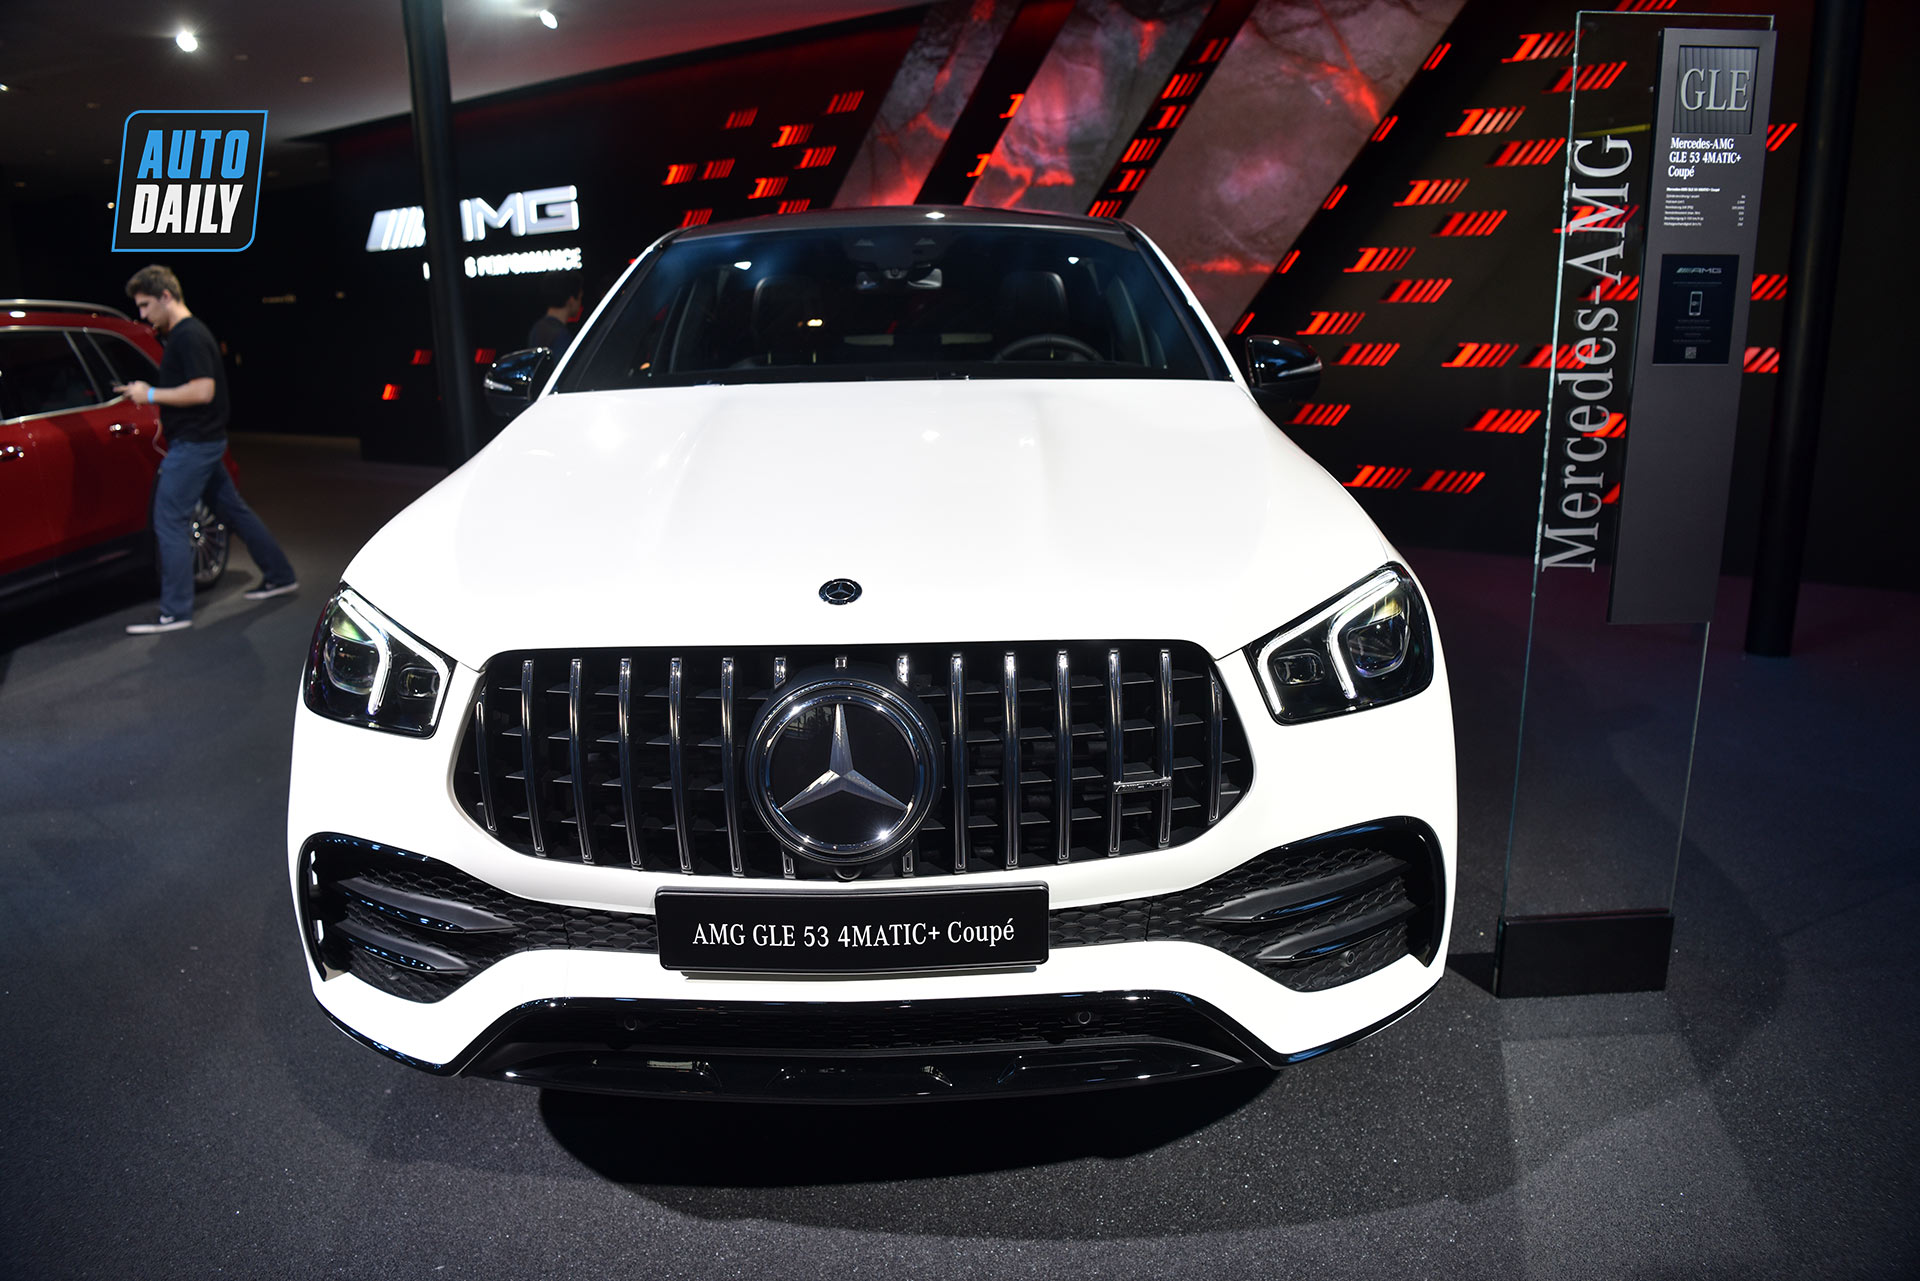 Mercedes-Benz GLE 53 Coupe 2021 sắp ra mắt tại Việt Nam, giá hơn 5,3 tỷ Khám phá chi tiết Mercedes-Benz GLE Coupe 2020 tại Frankfurt Auto Show 2019 gle-53-4matic-autodaily-04.jpg